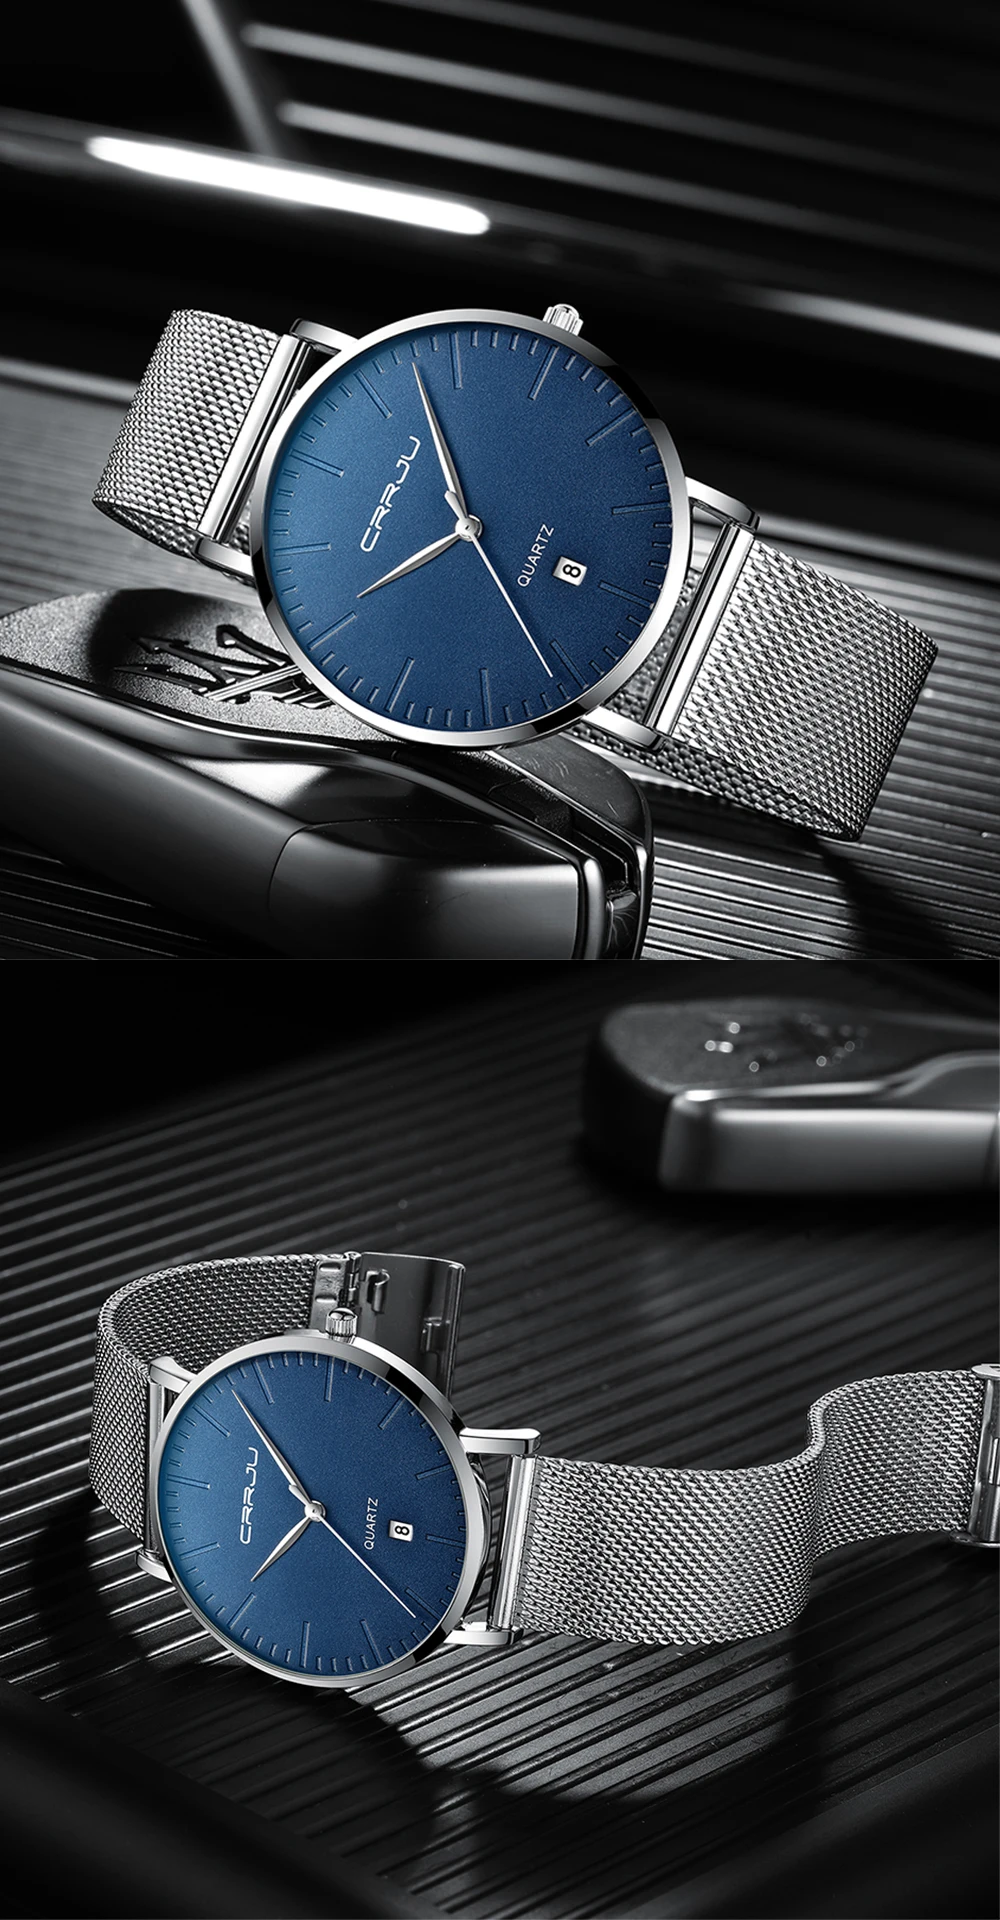 CRRJU модные мужские часы Топ бренд класса люкс Синий водонепроницаемые часы ультра тонкий Дата Простые повседневные кварцевые часы мужские спортивные часы